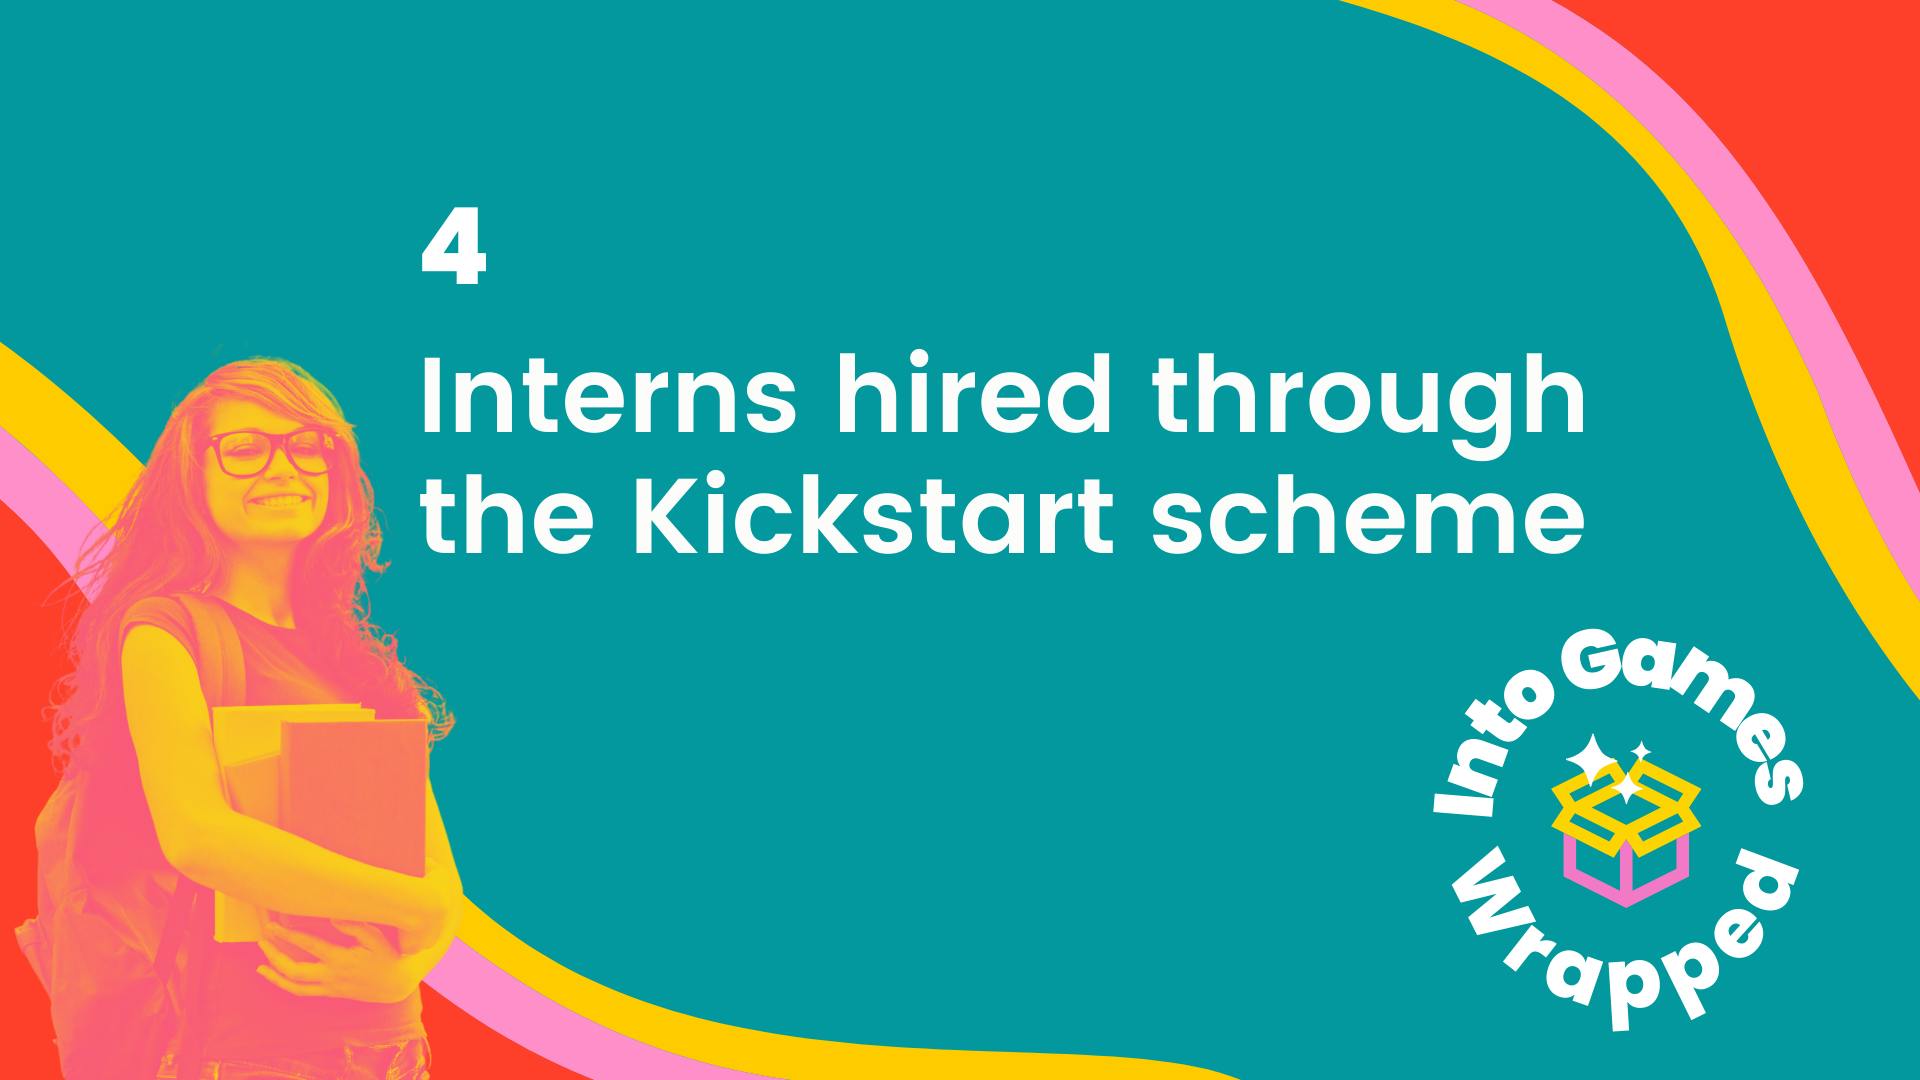 4 interns hired through the Kickstart scheme